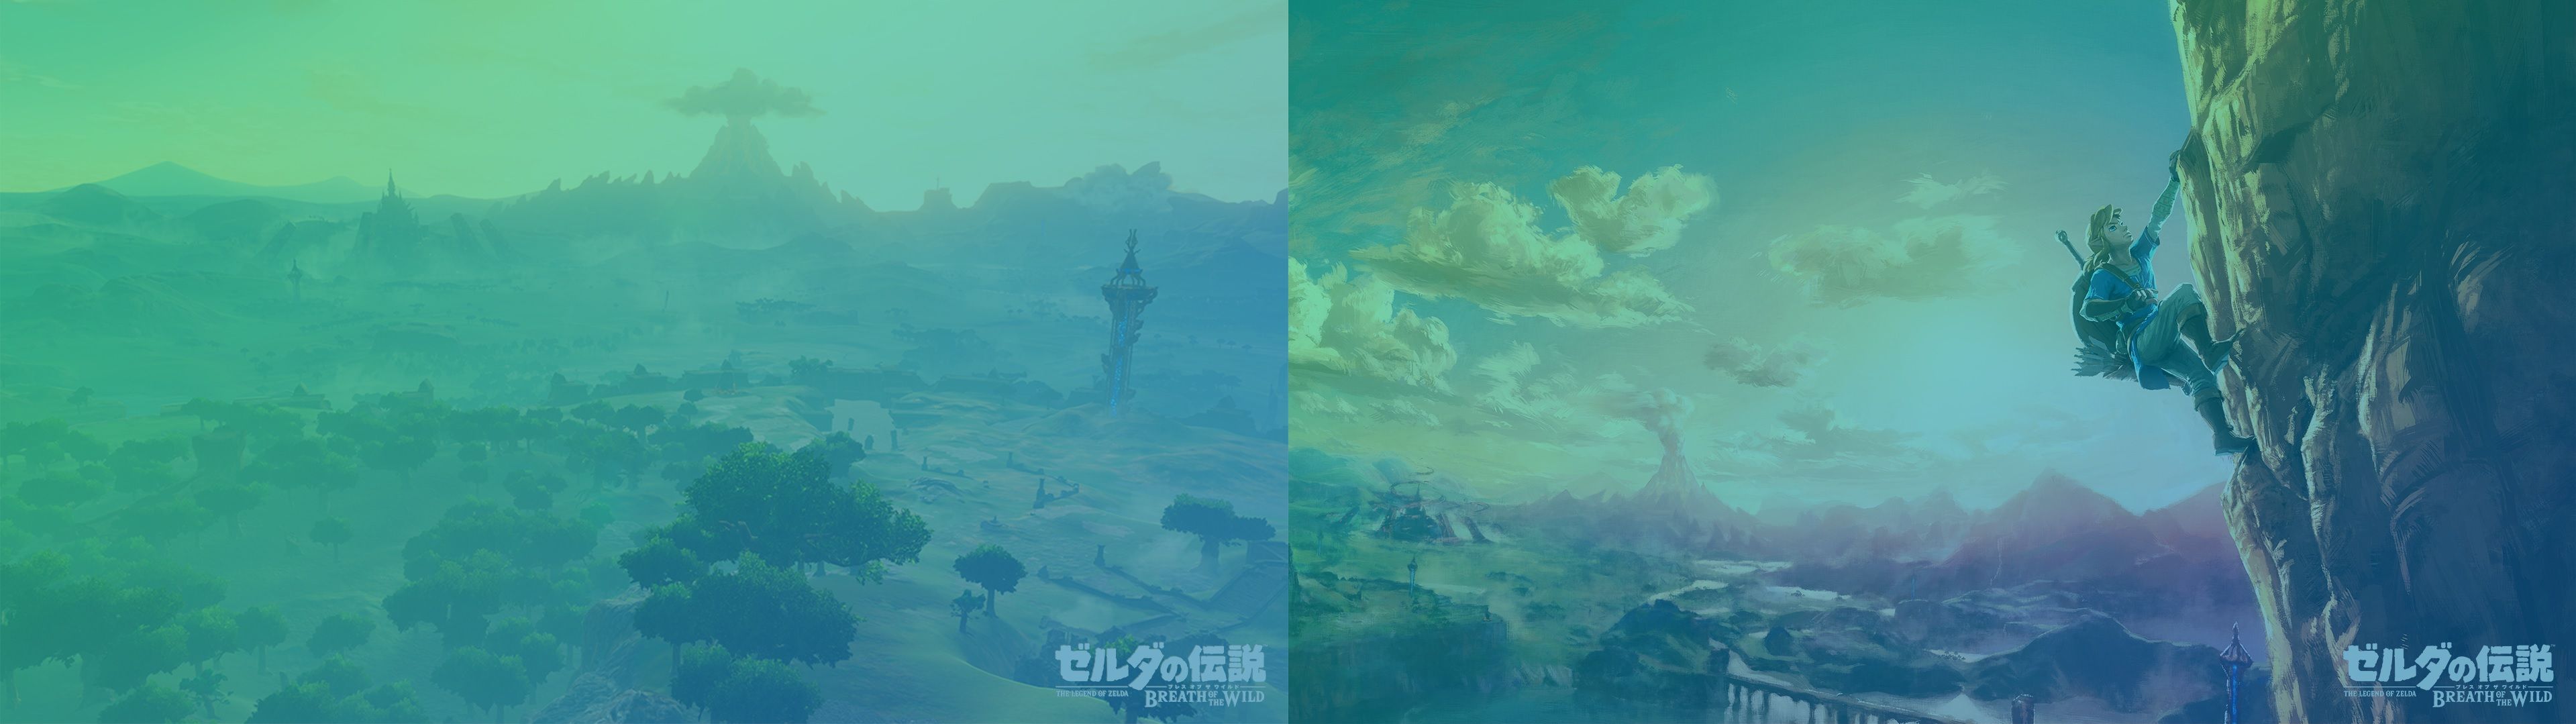 Legend Of Zelda Breath Of The Wild Facebook , HD Wallpaper & Backgrounds